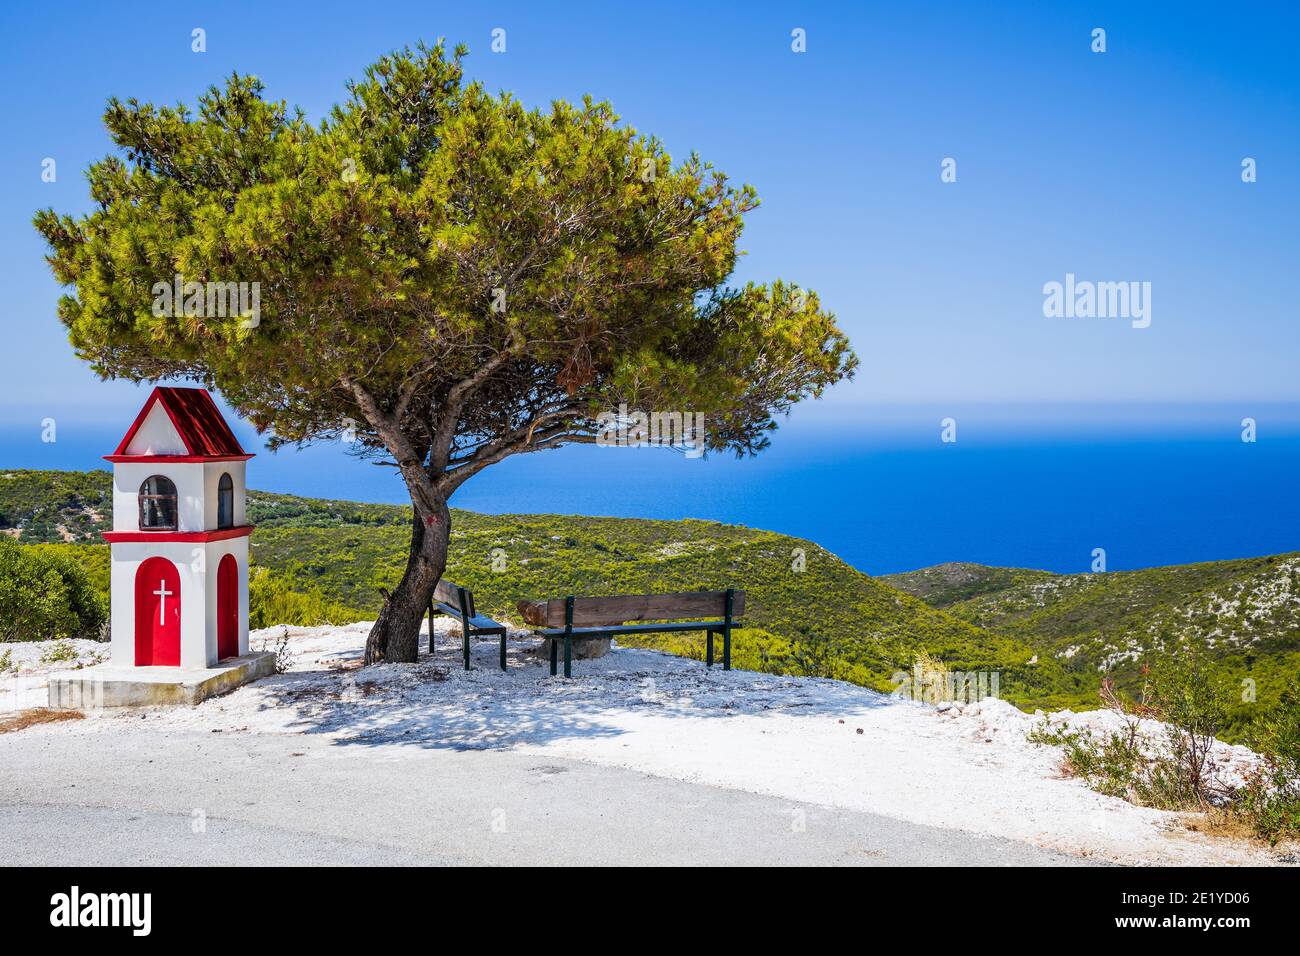 Zakynthos, Grecia. Mirador con banco y árbol. Foto de stock